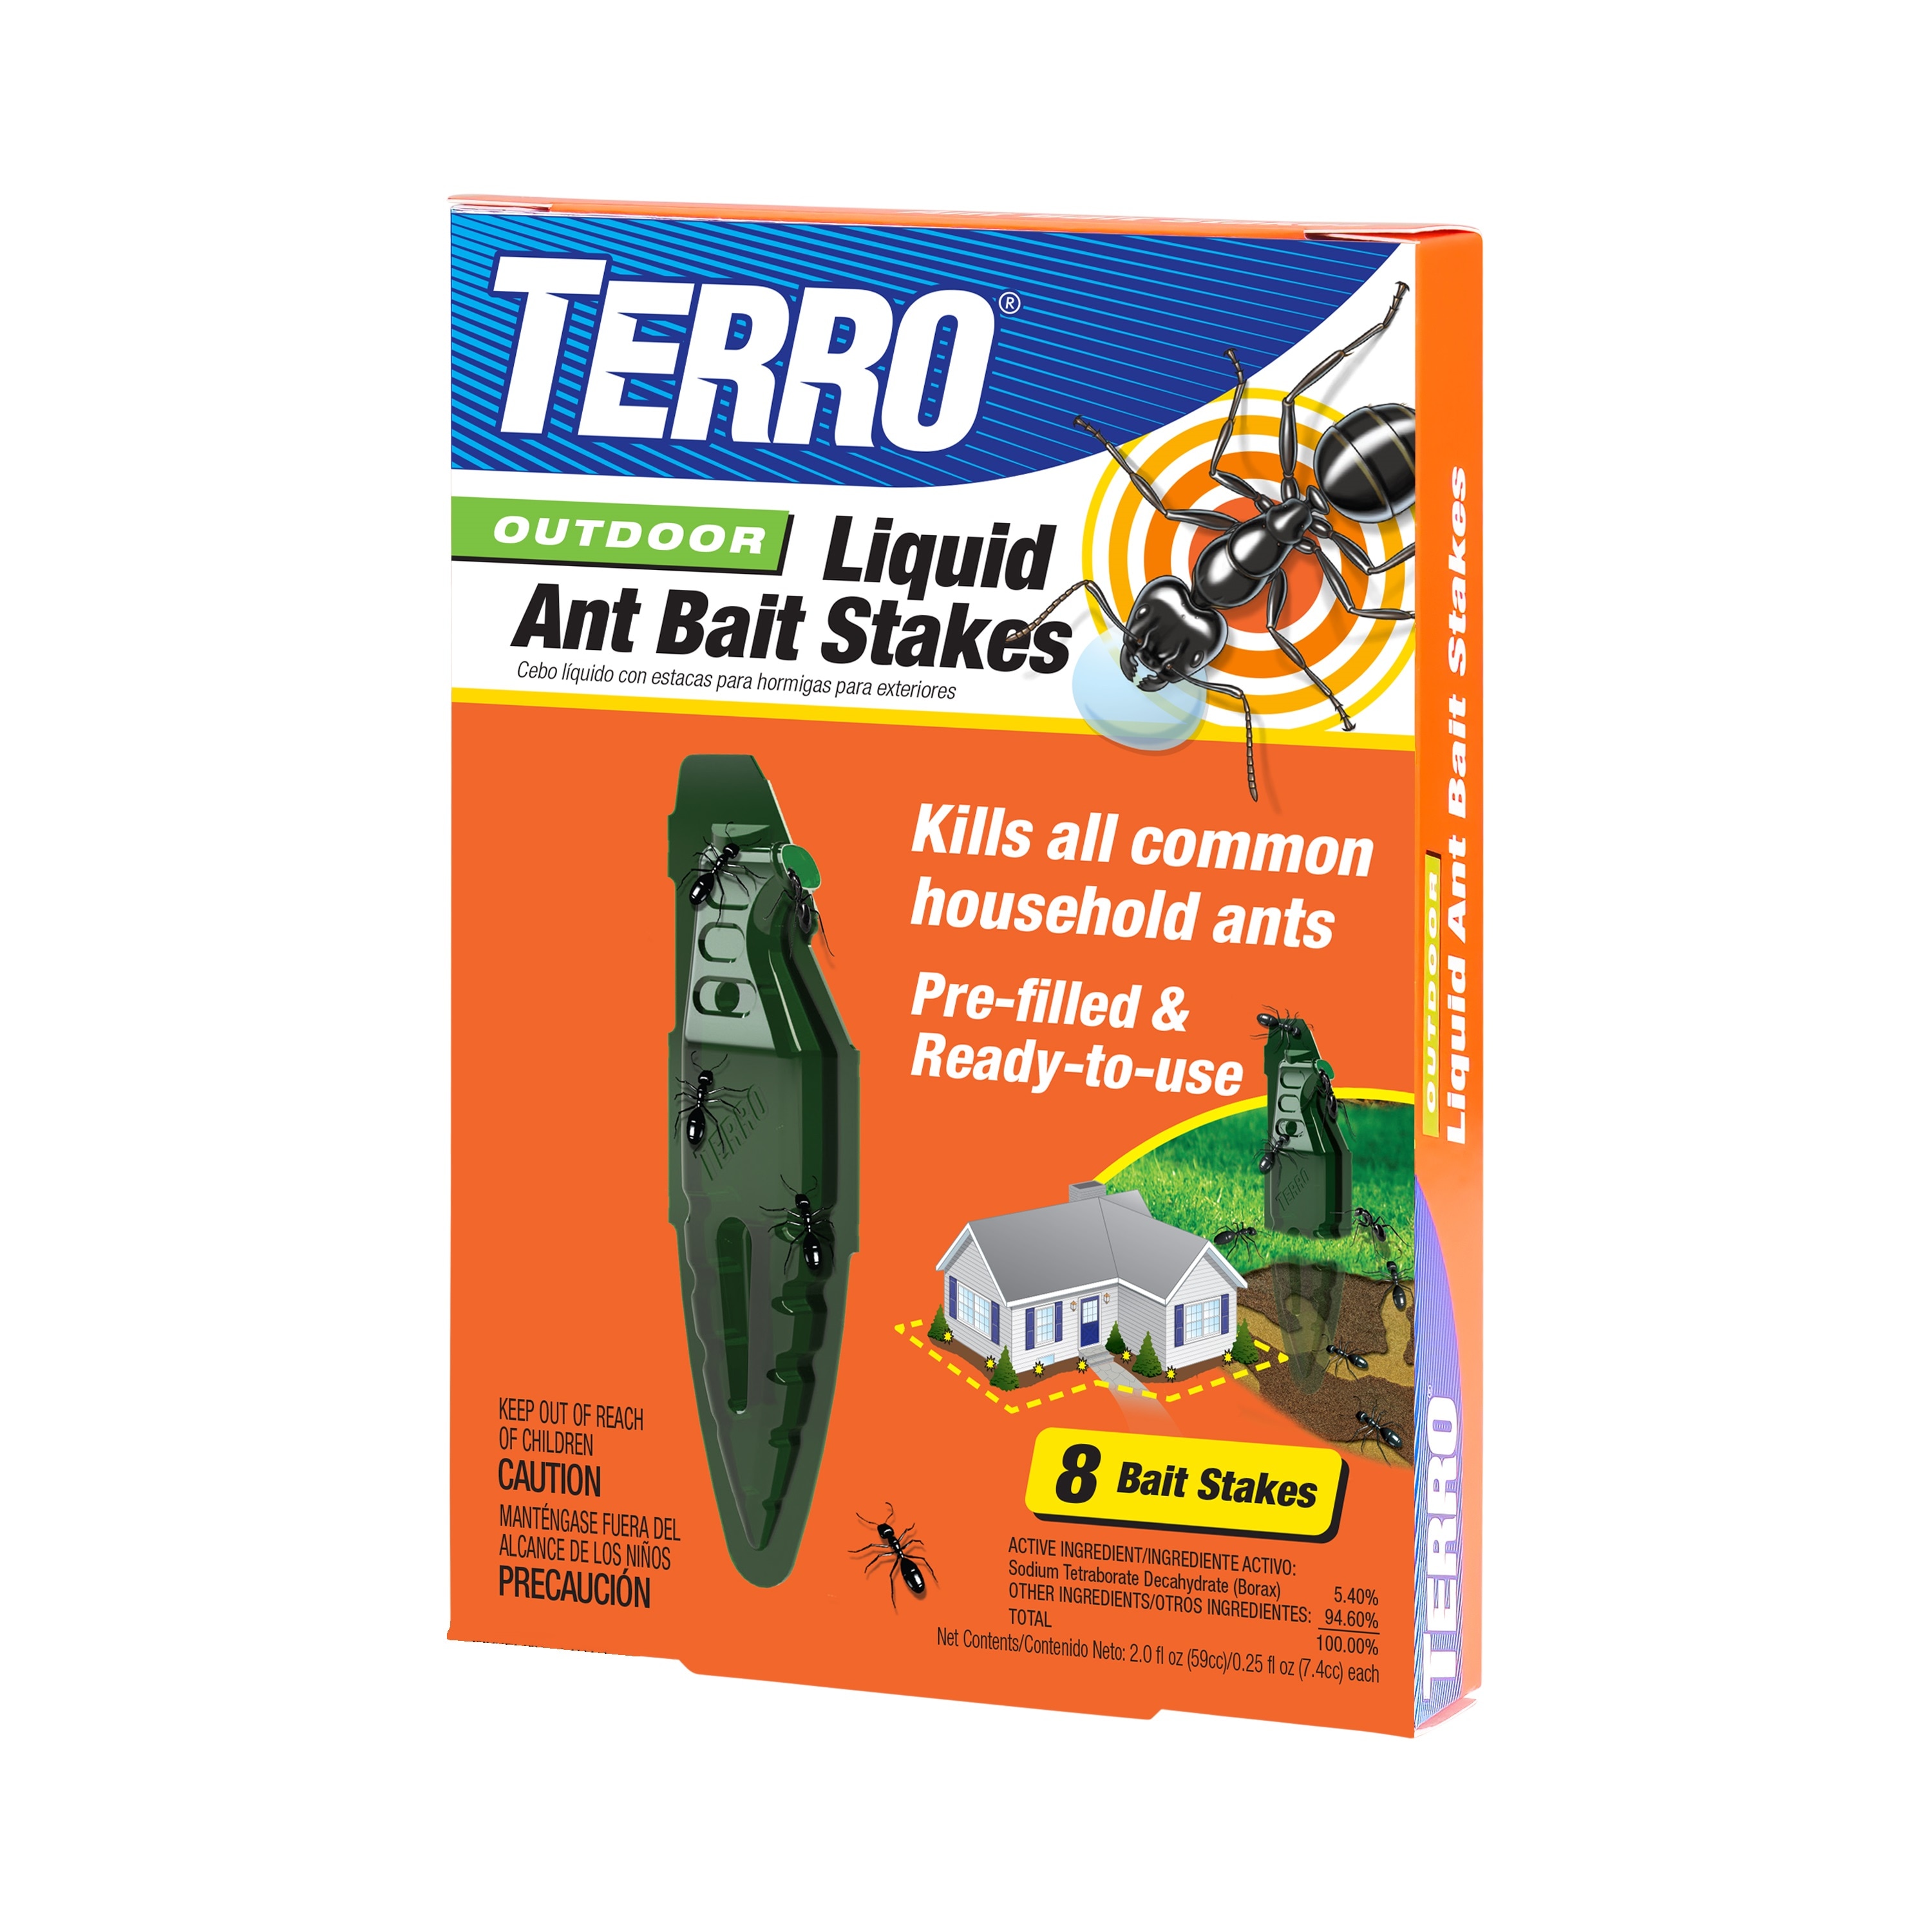 TERRO 1.4-fl oz Ant Bait Station Stakes